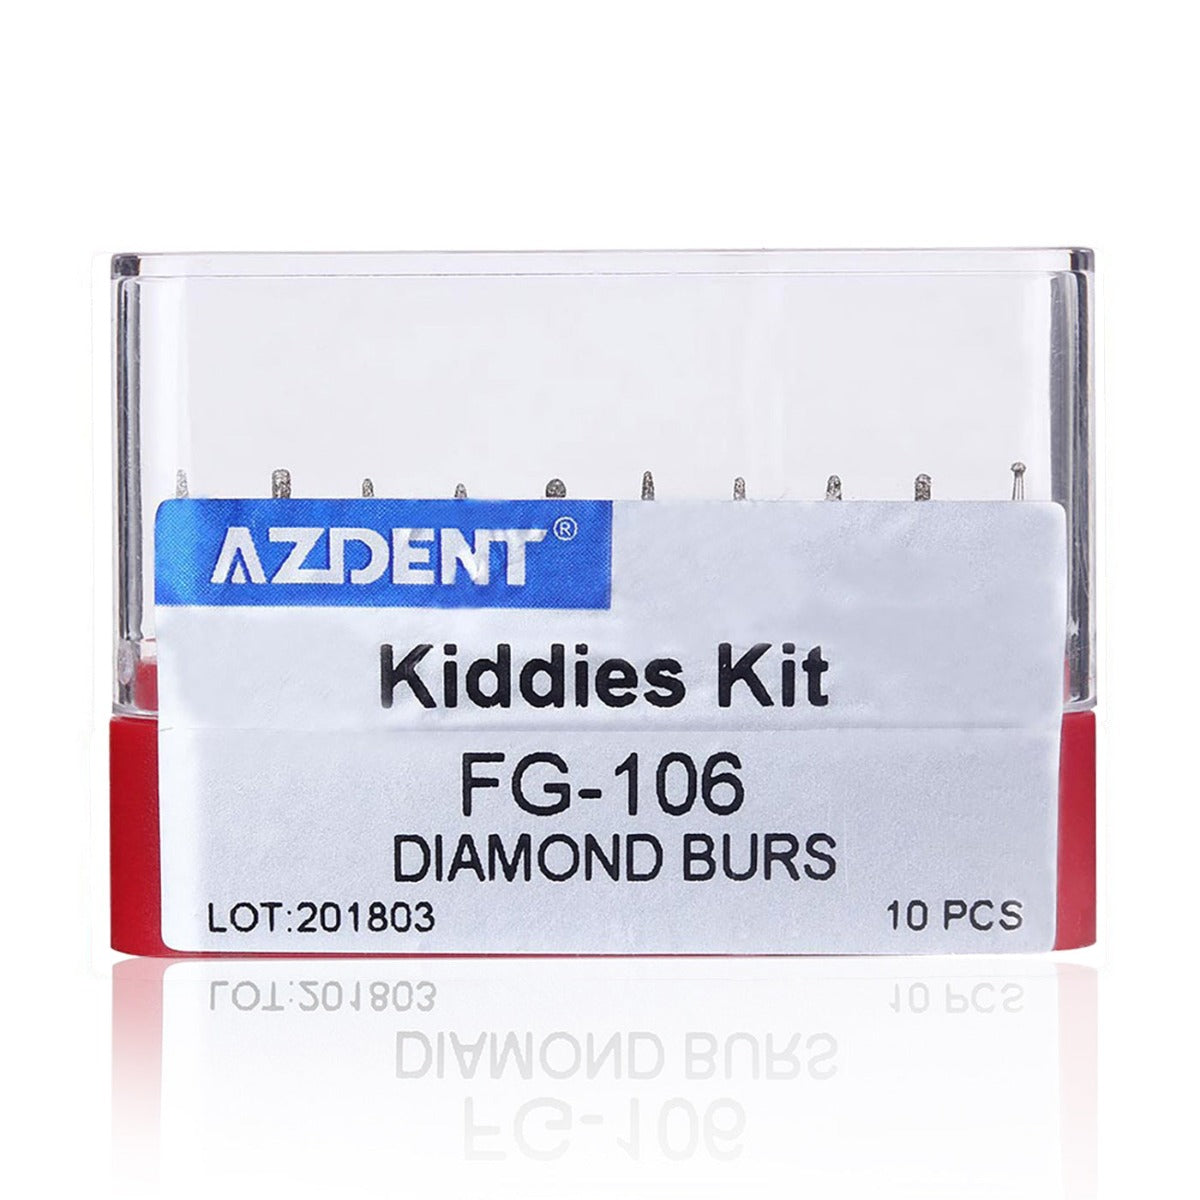 Dental Diamond Bur FG-106 Kiddies Kit 10pcs/Kit - pairaydental.com